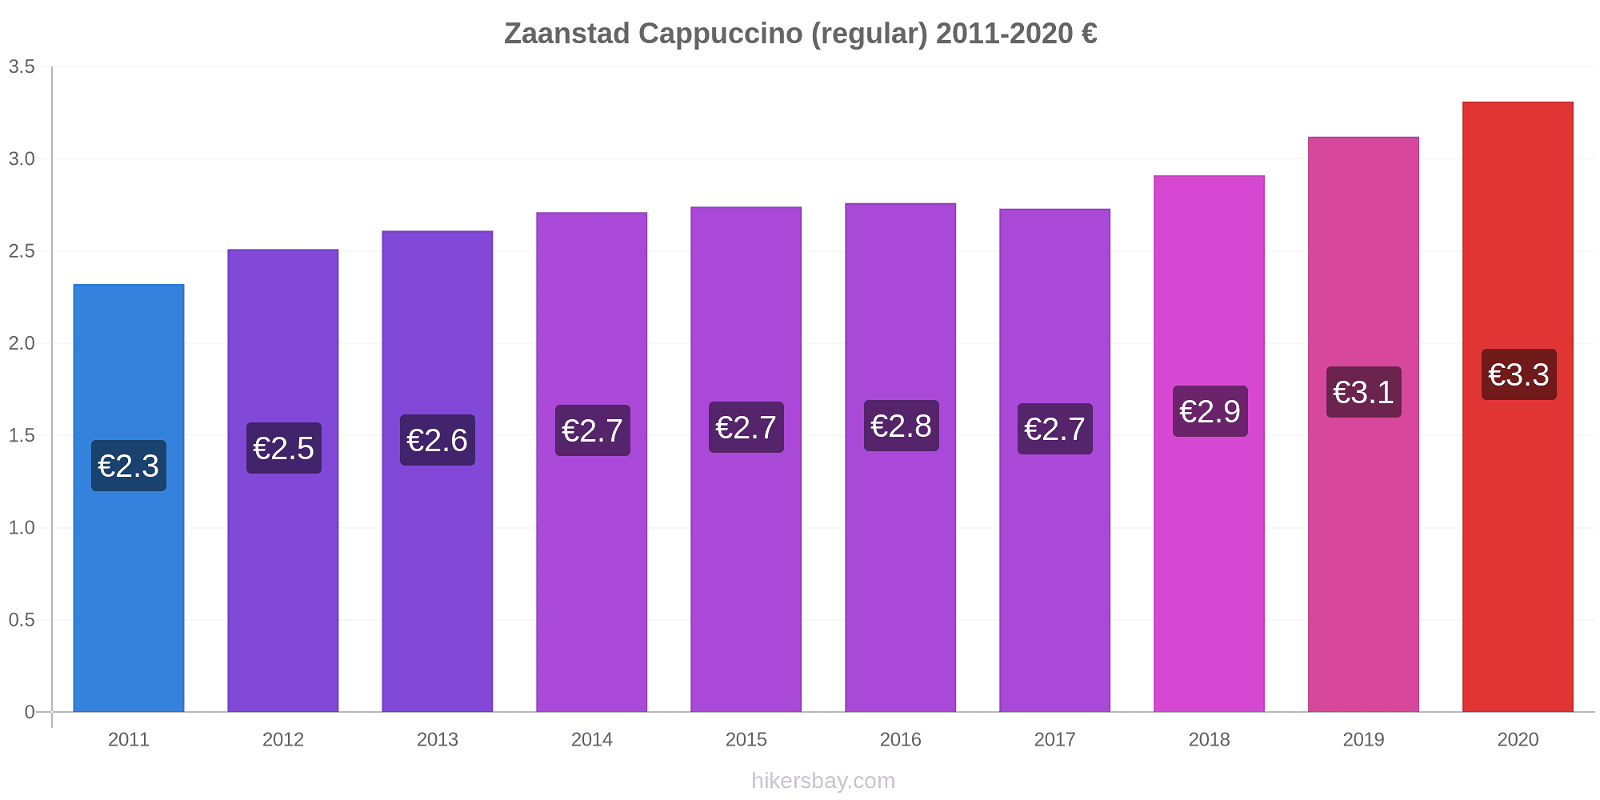 Zaanstad price changes Cappuccino (regular) hikersbay.com